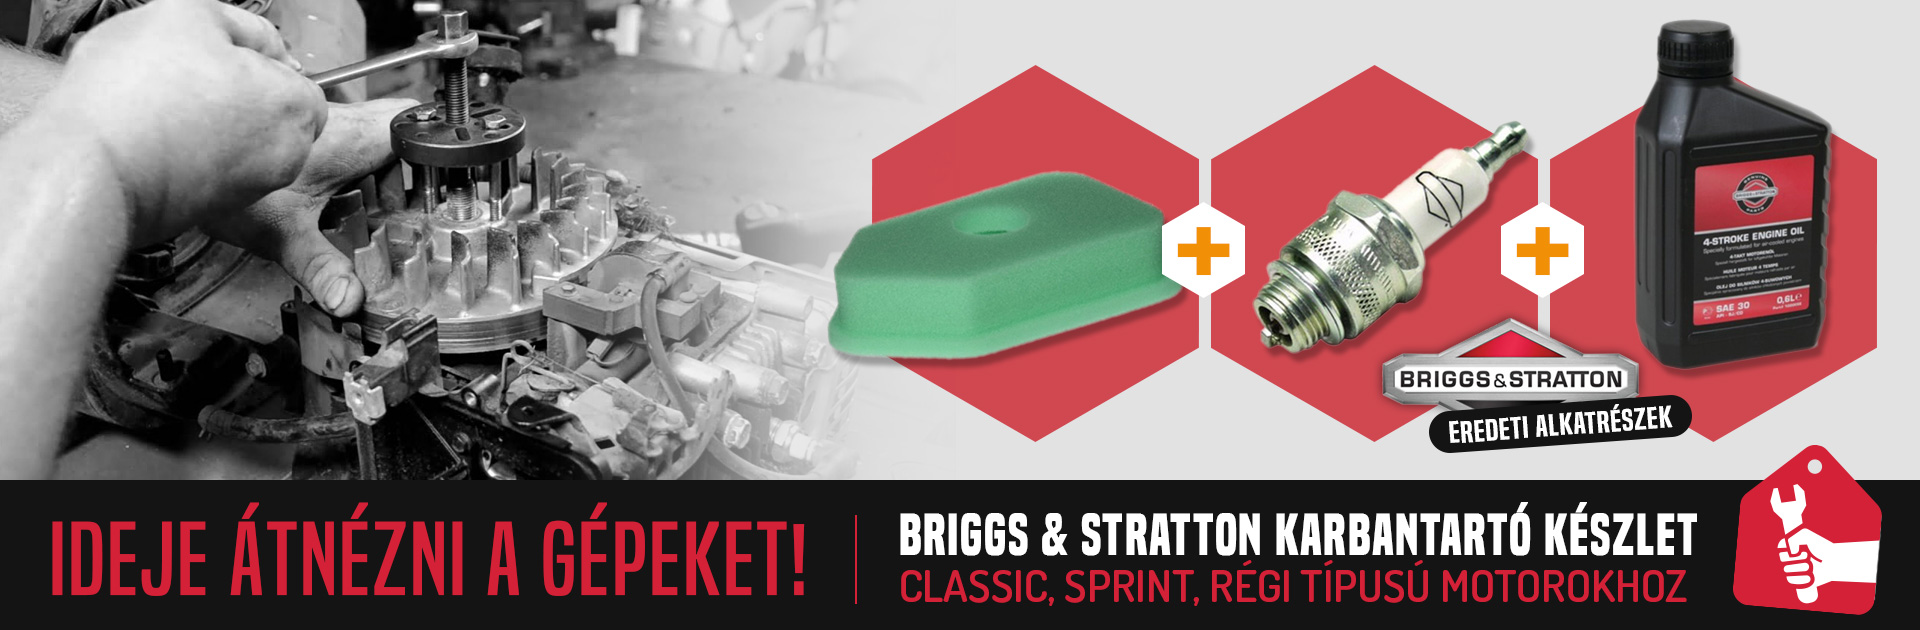 Briggs & Stratton karbantartó készlet